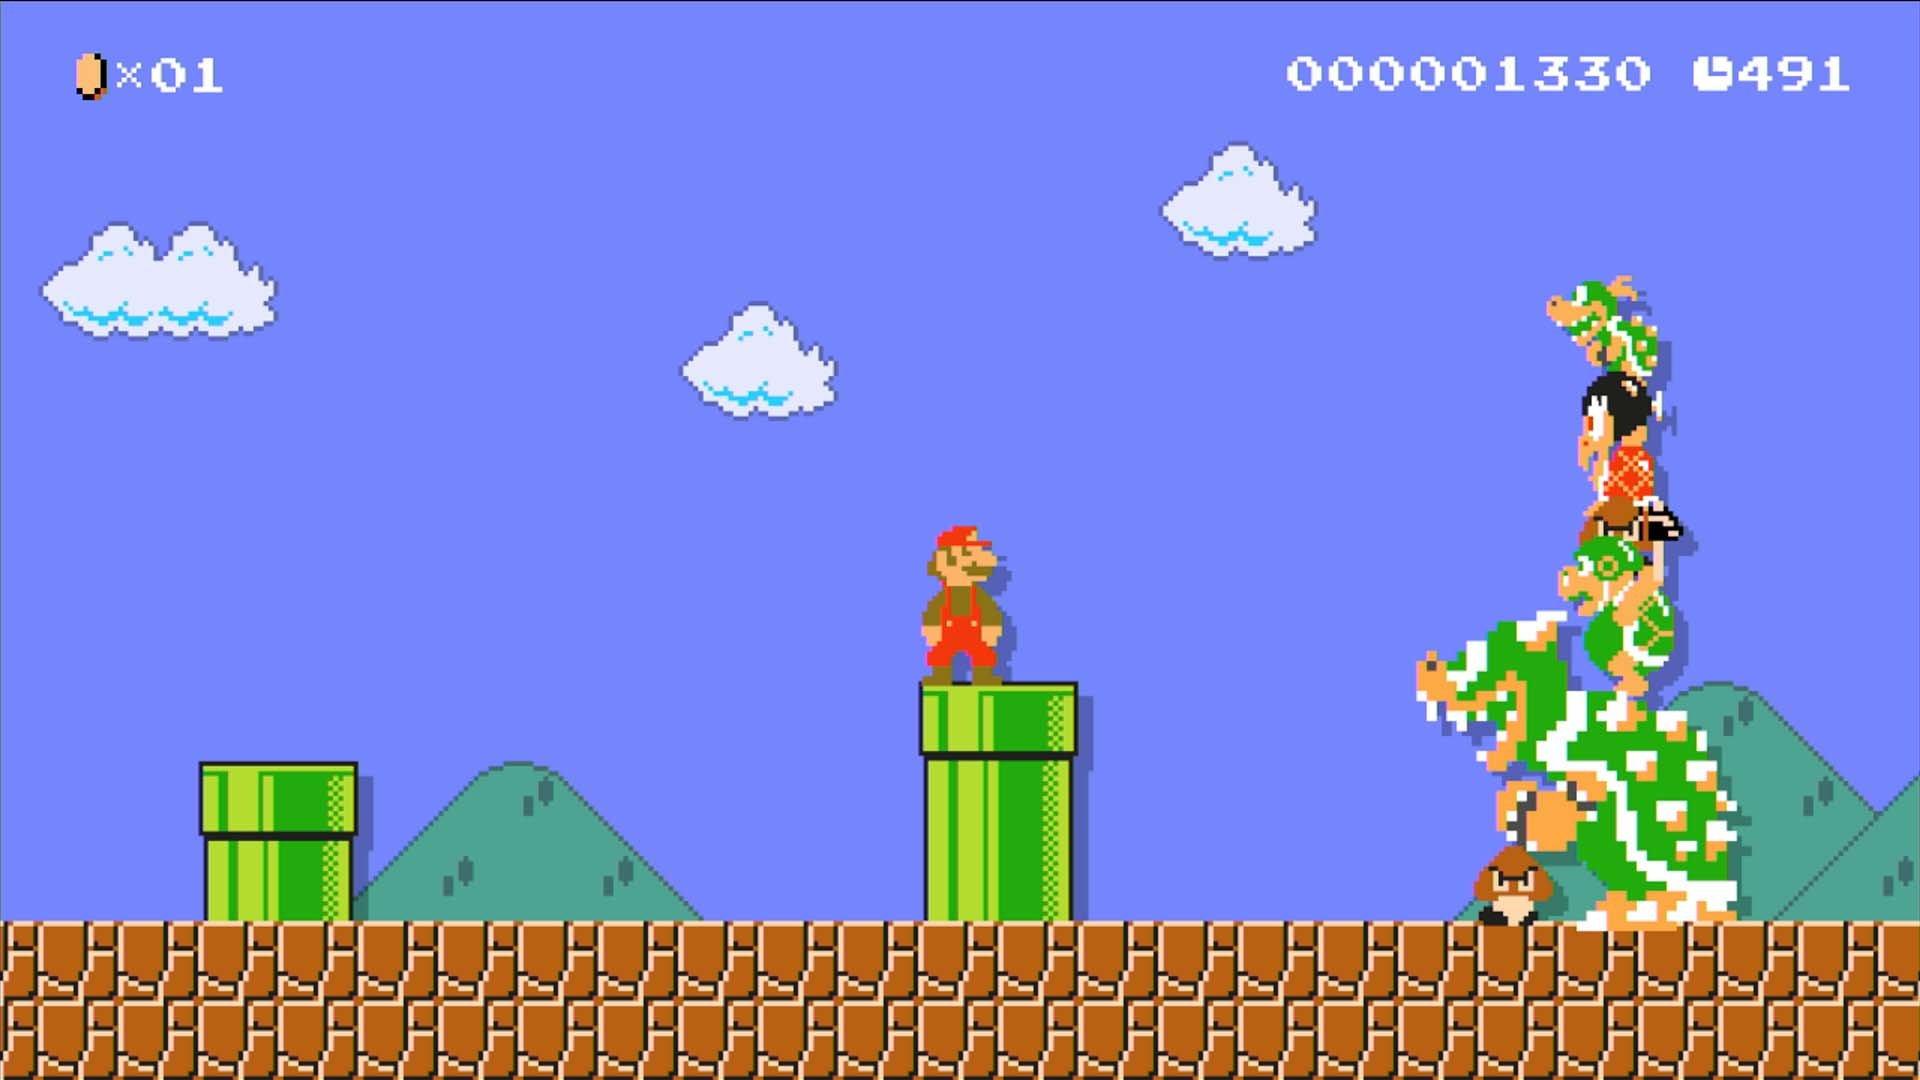 Super Mario Maker™ 2